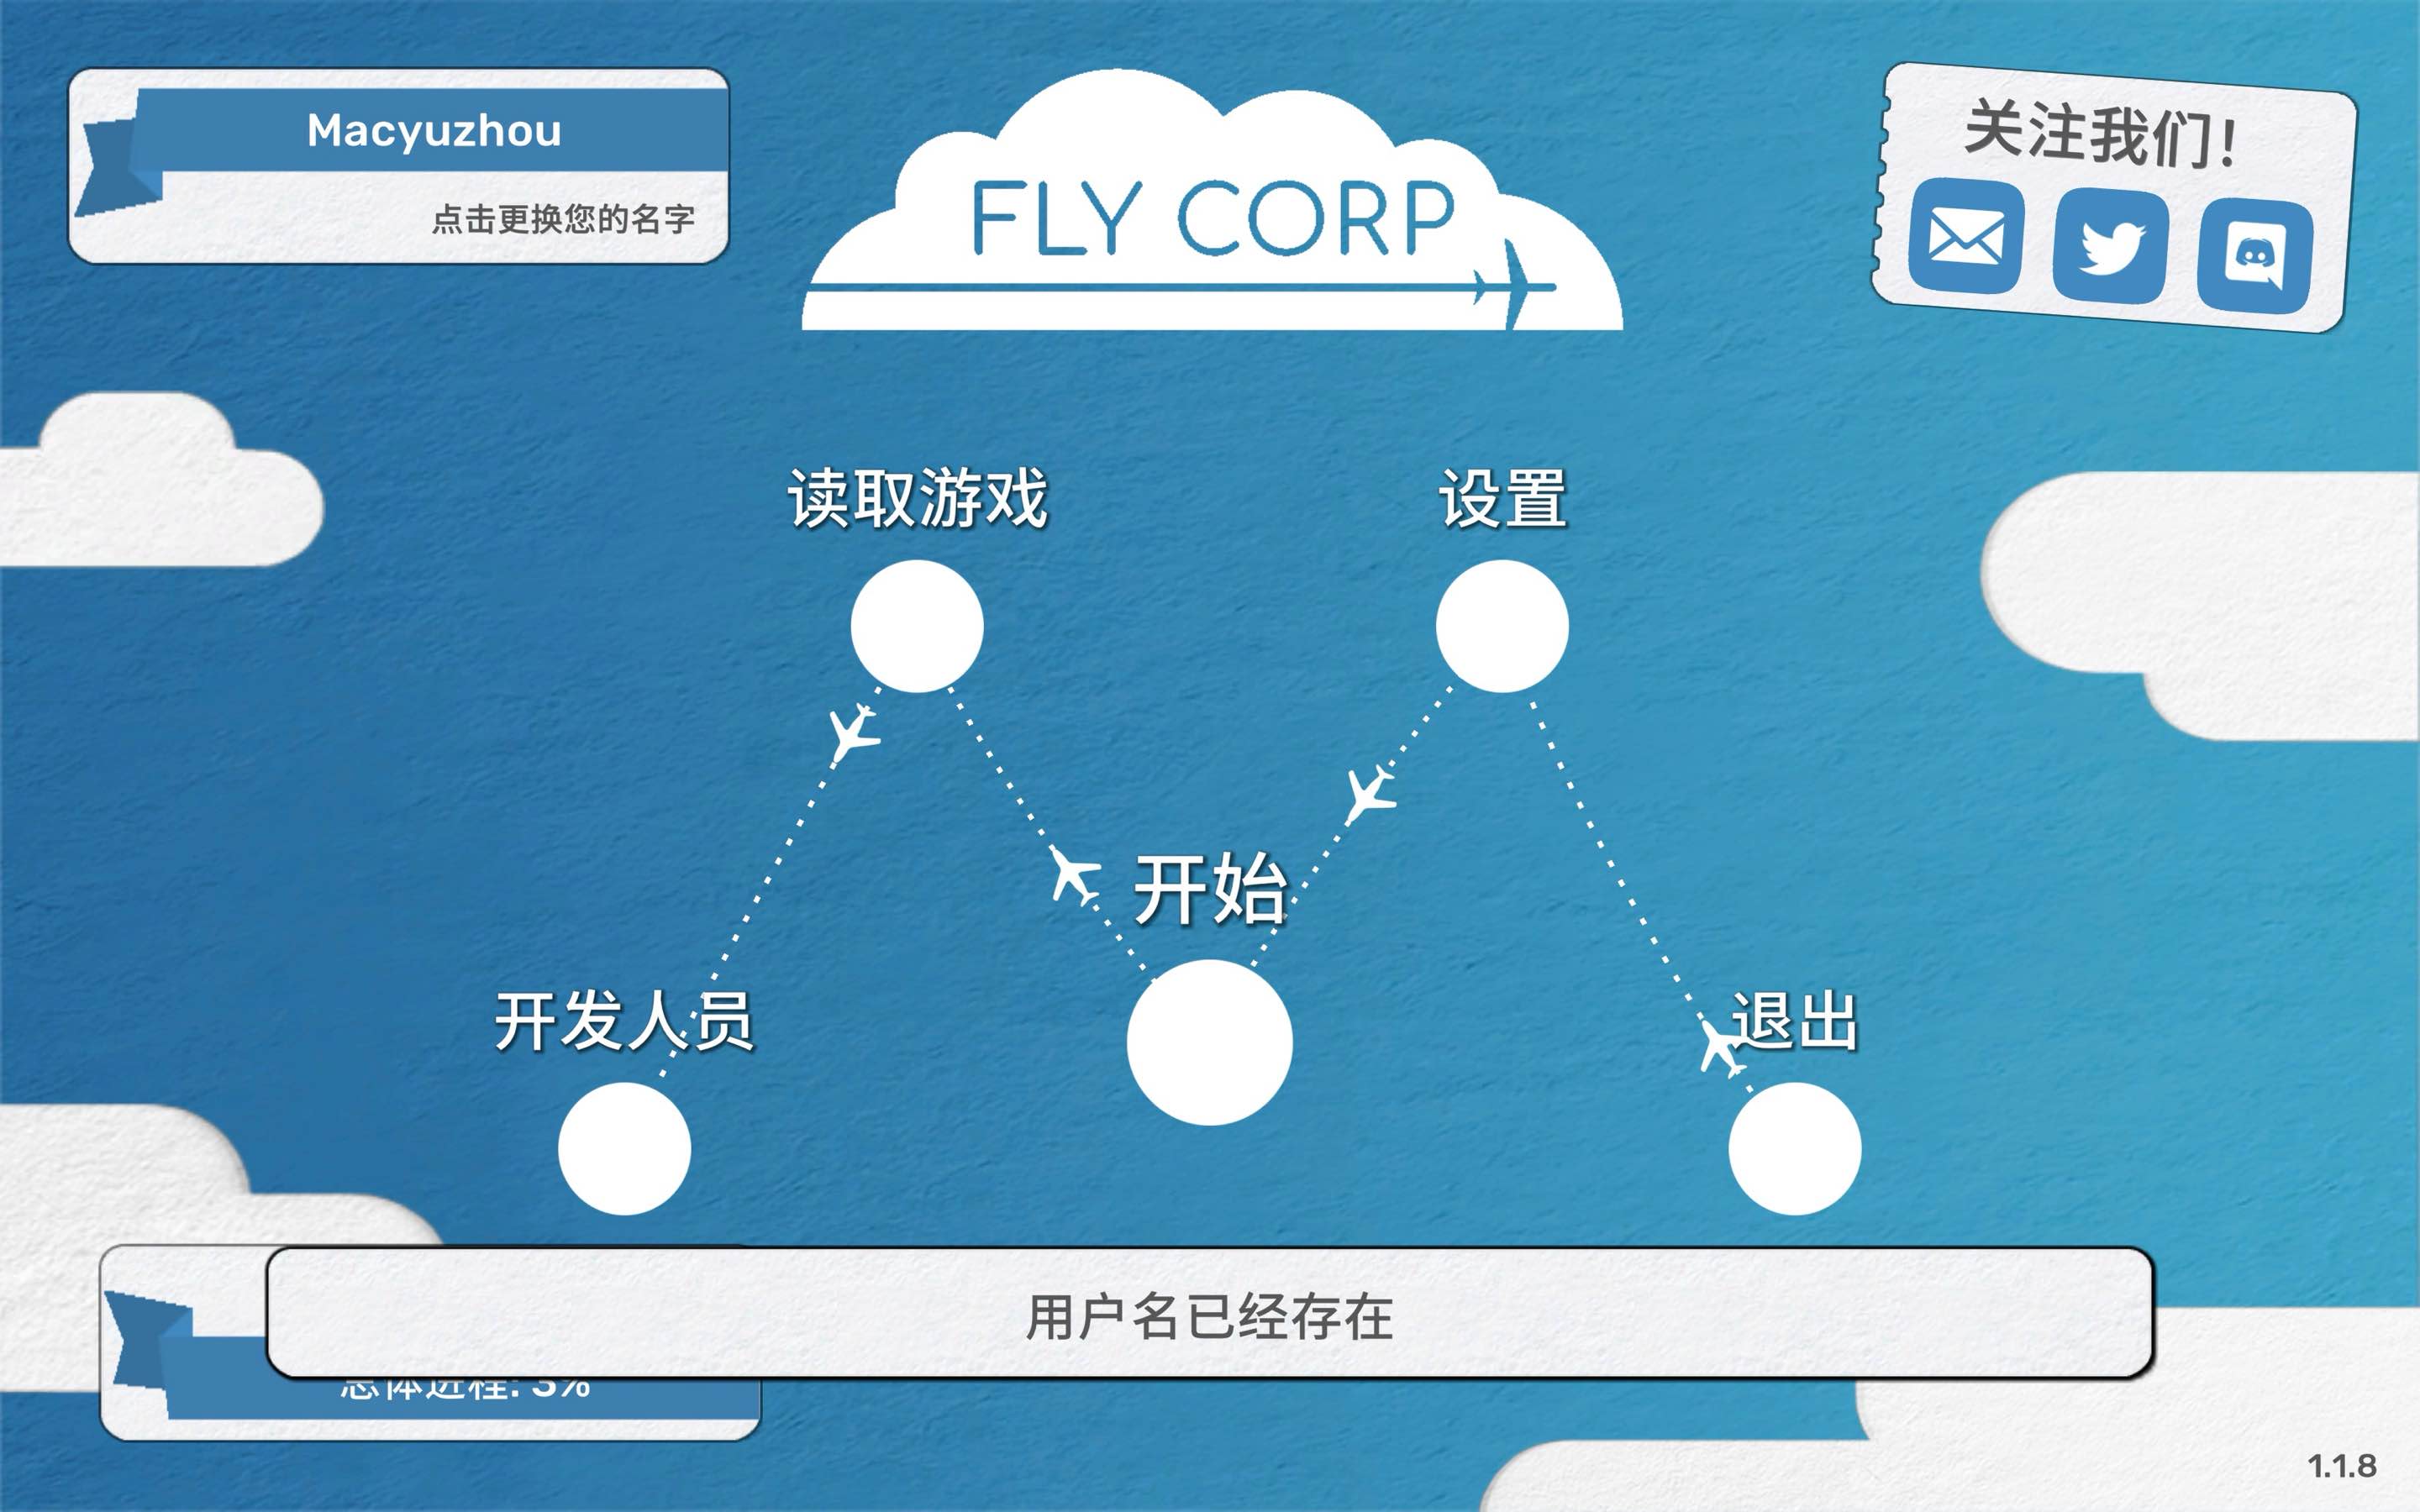 飞飞公司 for Mac Fly Corp v1.1.8 中文原生版 苹果电脑